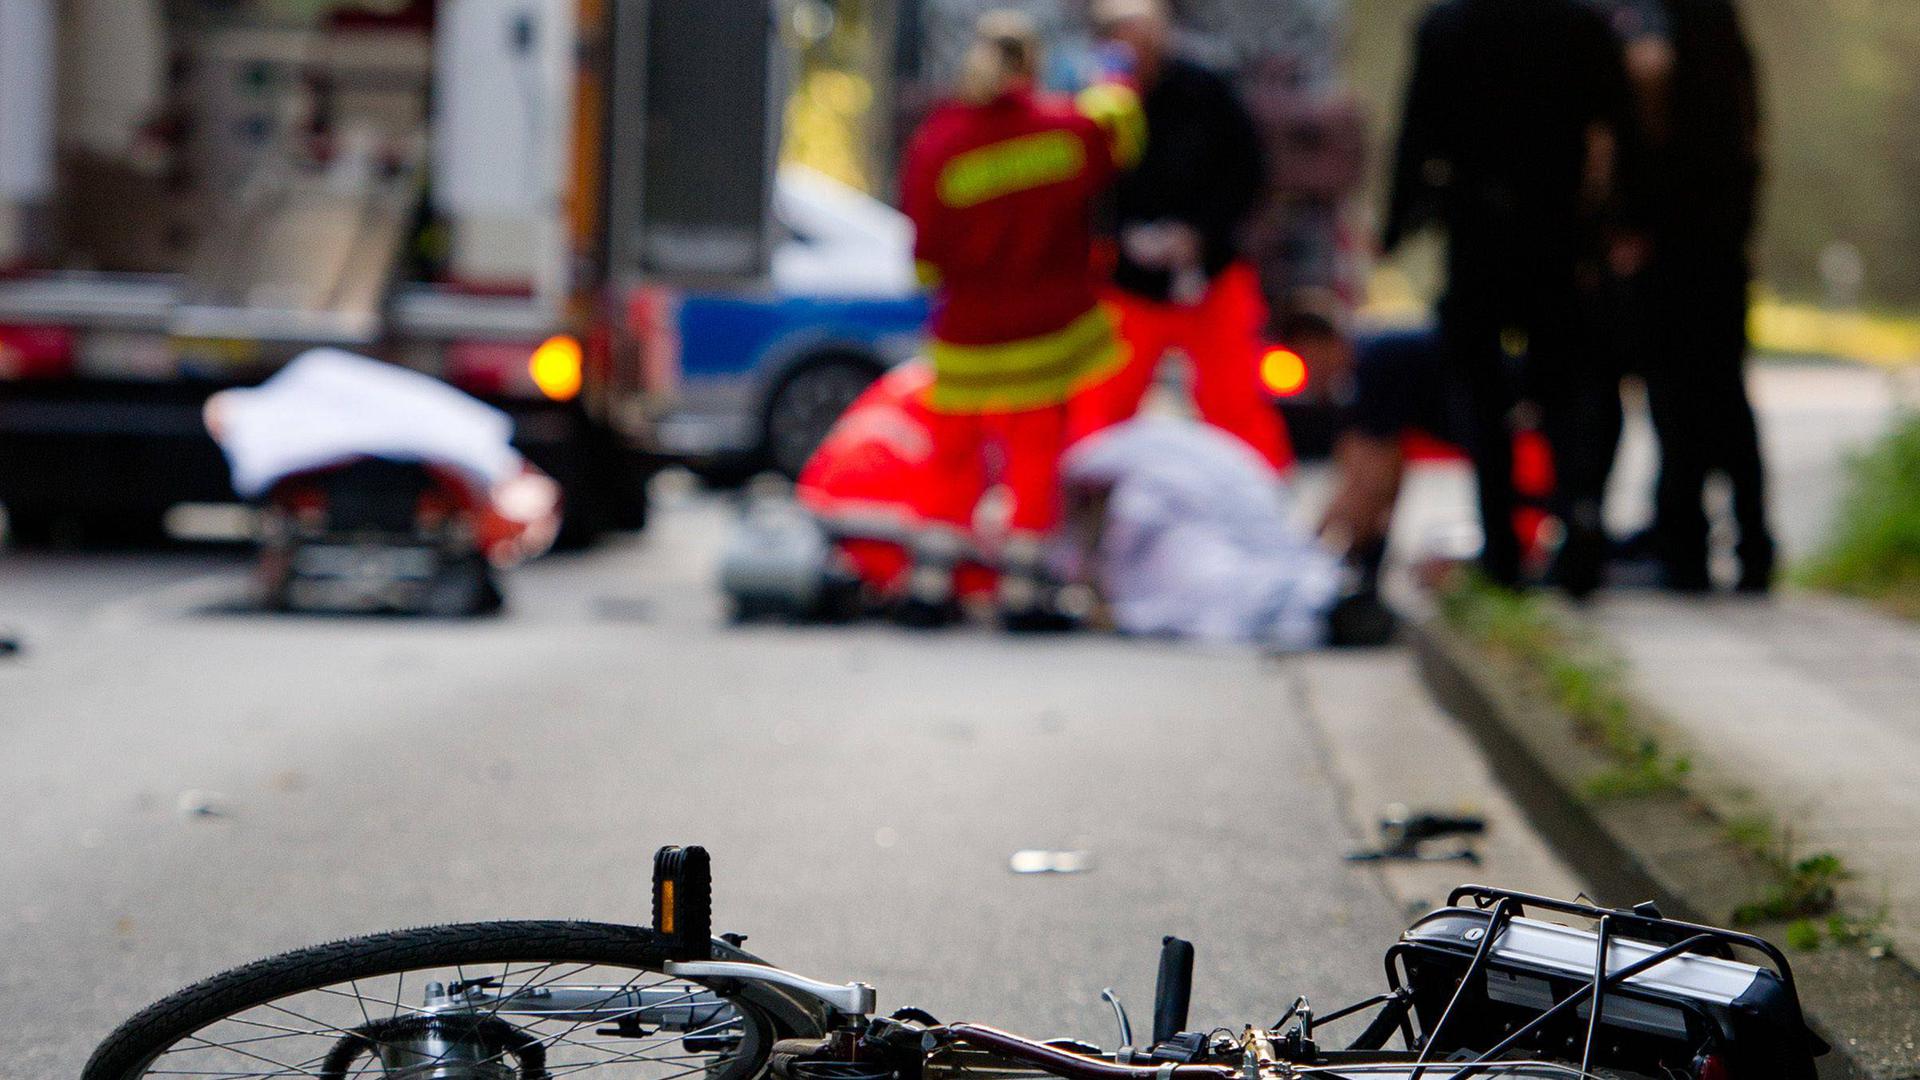 Ein Fahrrad liegt am 18.09.2014 in Hamburg nach einem Unfall auf der Straße. Beim Zusammenstoß zwischen einem Motorrad und einem Fahrrad im Stadtteil Lohbrügge wurden zwei Menschen verletzt. Foto: Daniel Bockwoldt/dpa +++(c) dpa - Bildfunk+++ | Verwendung weltweit